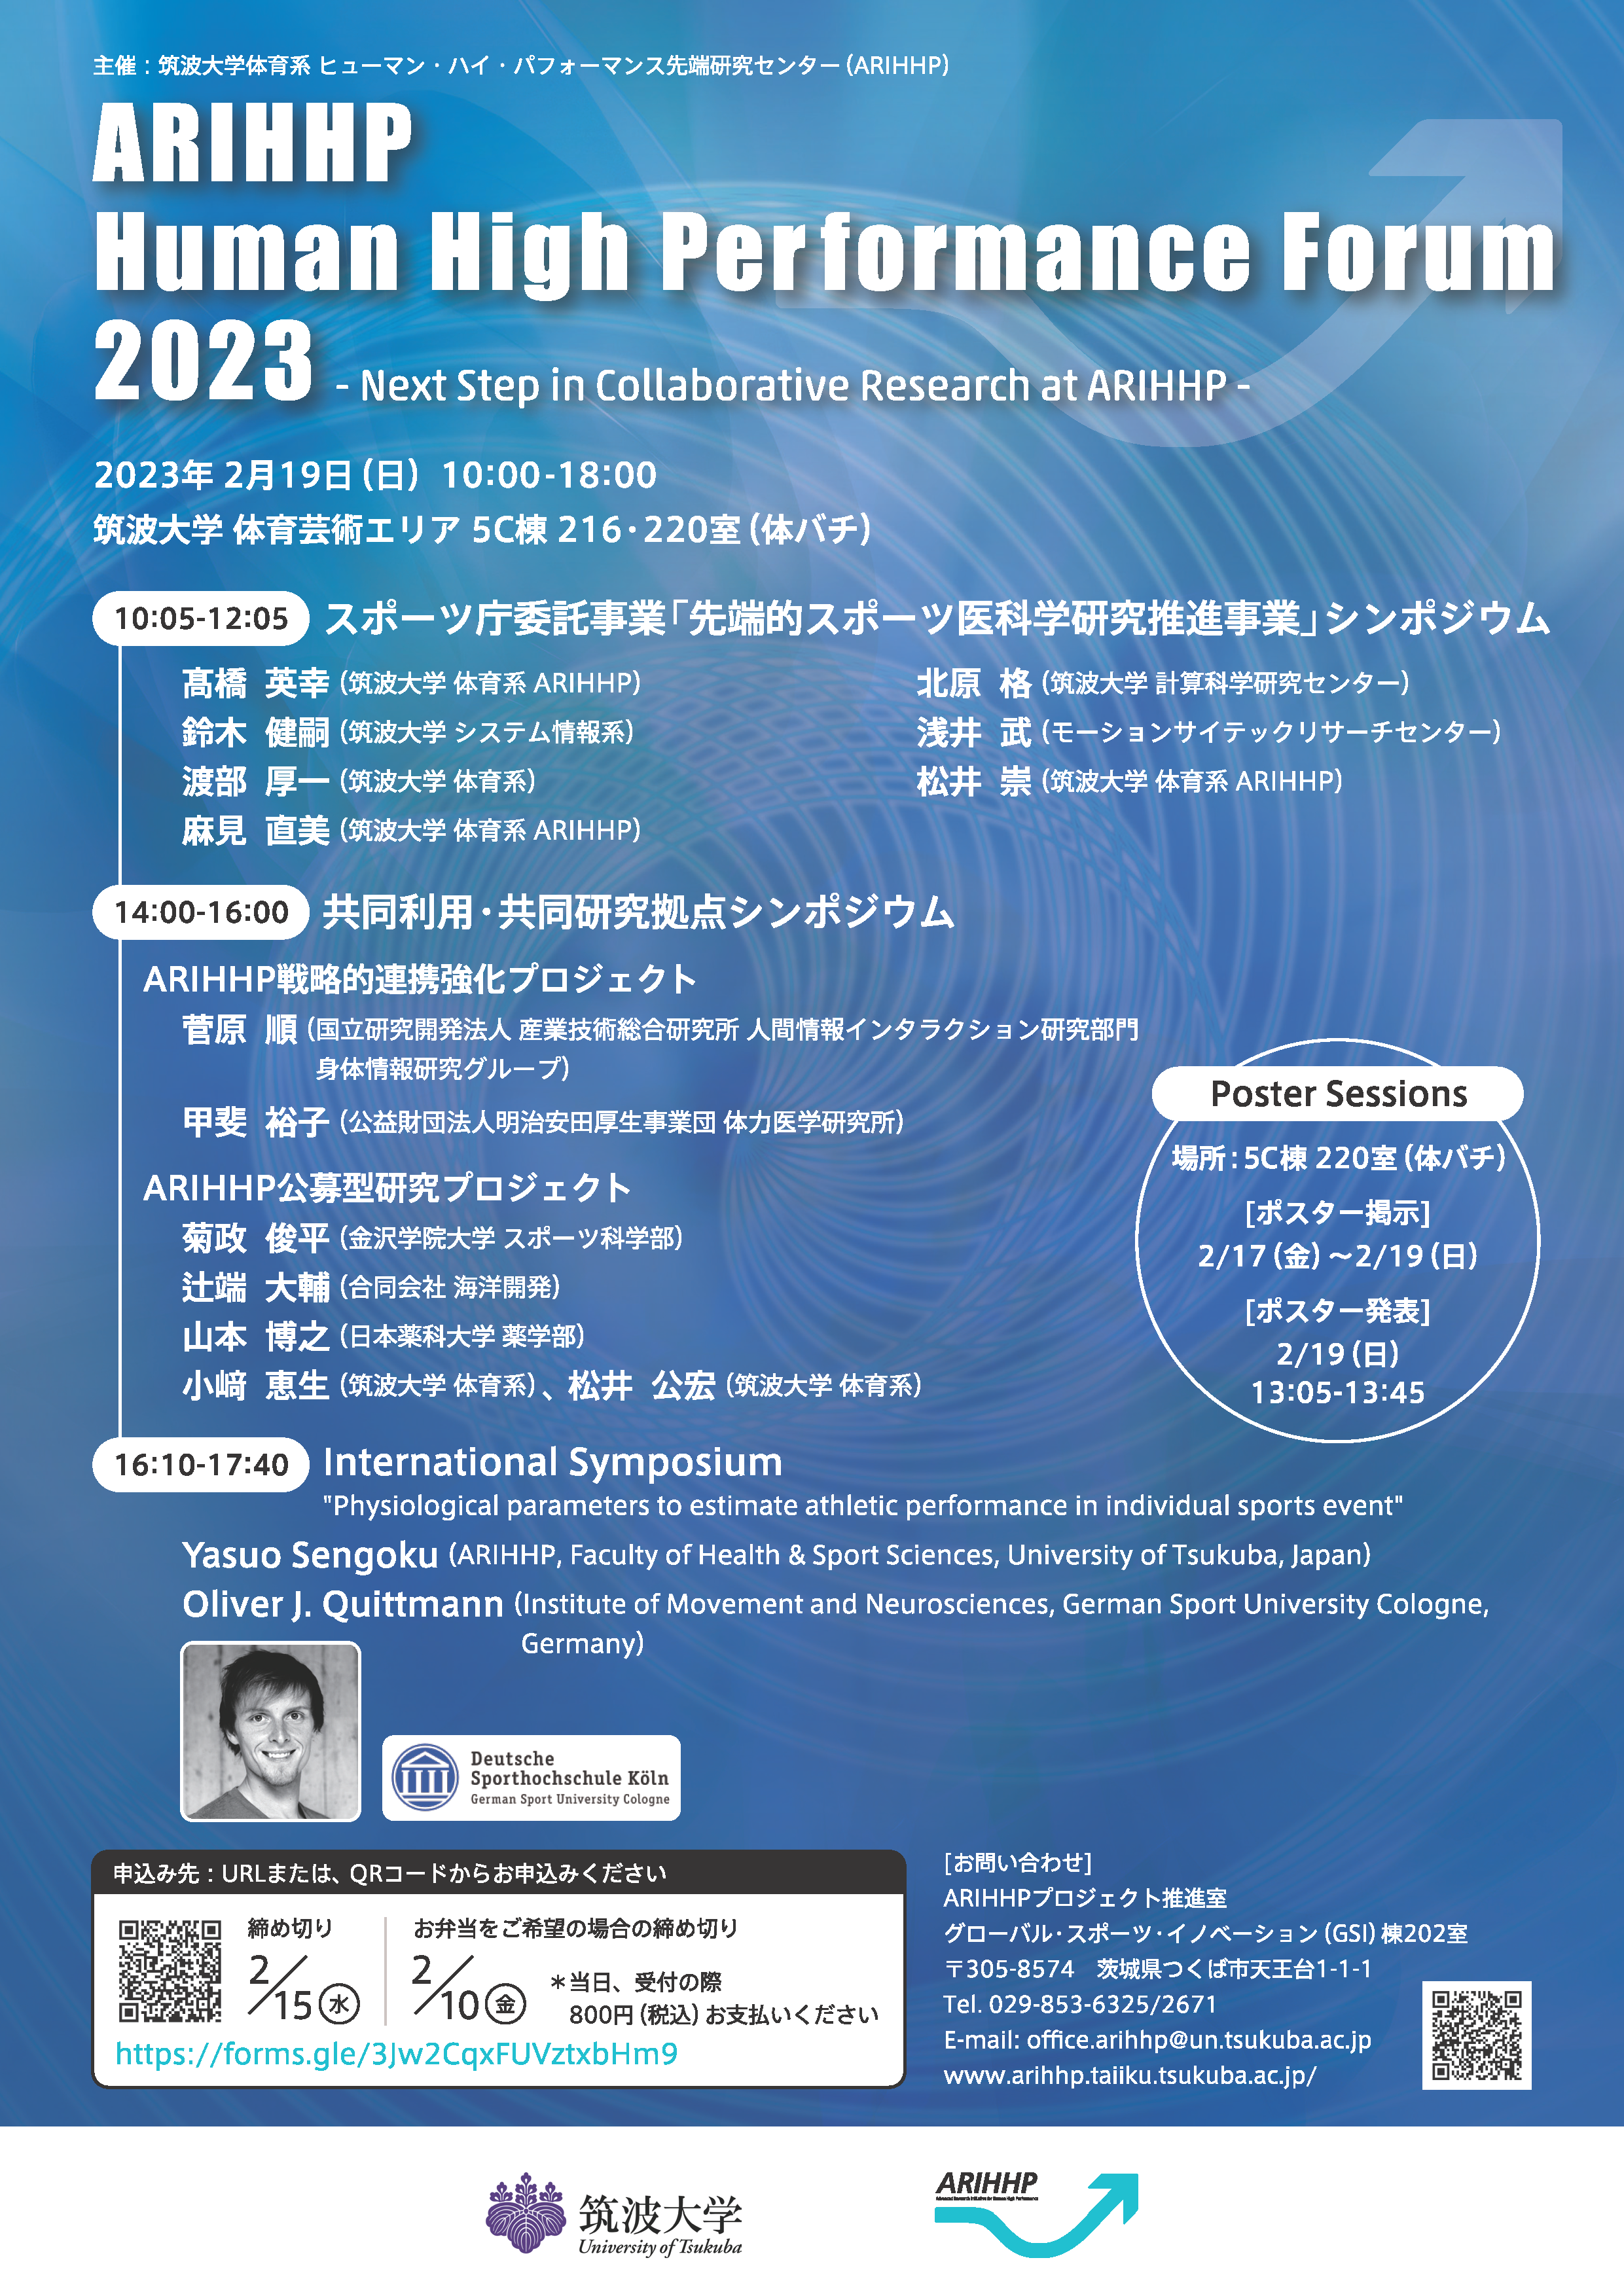 ARIHHP Forum 2023 Flyer